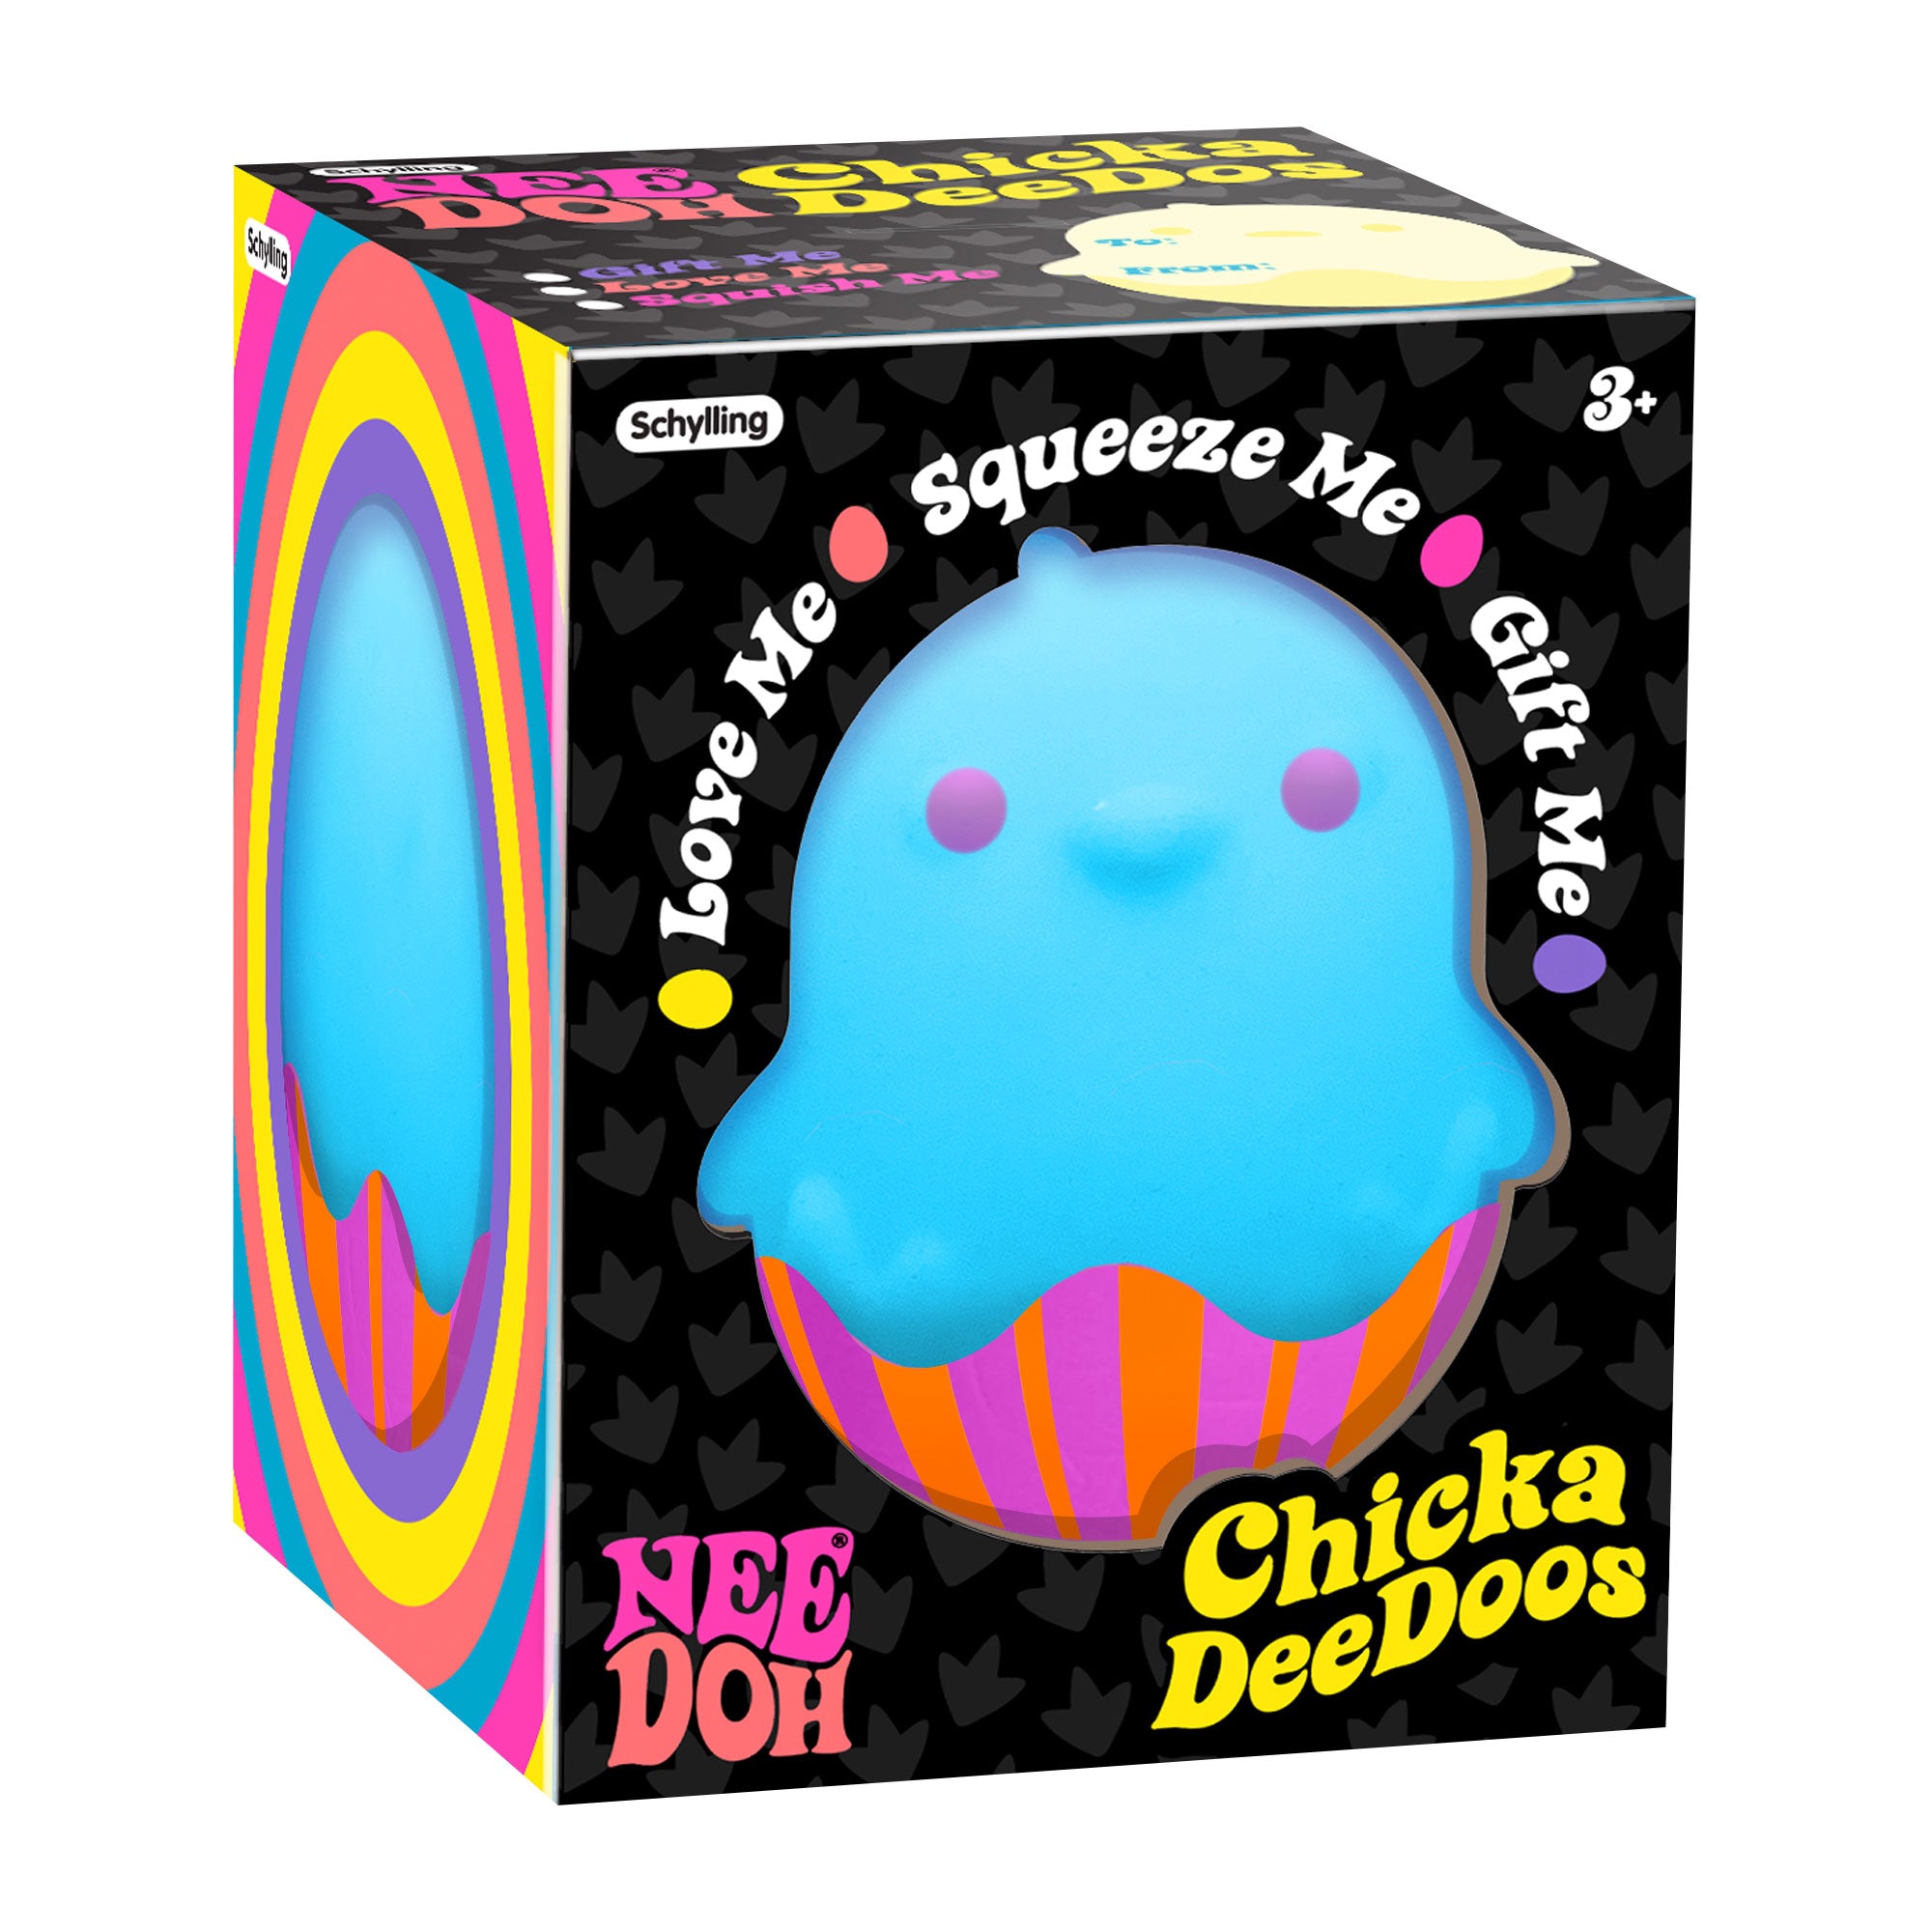 Schylling - NeeDoh - Chicka DeeDoos - Sensory Tactile Toys